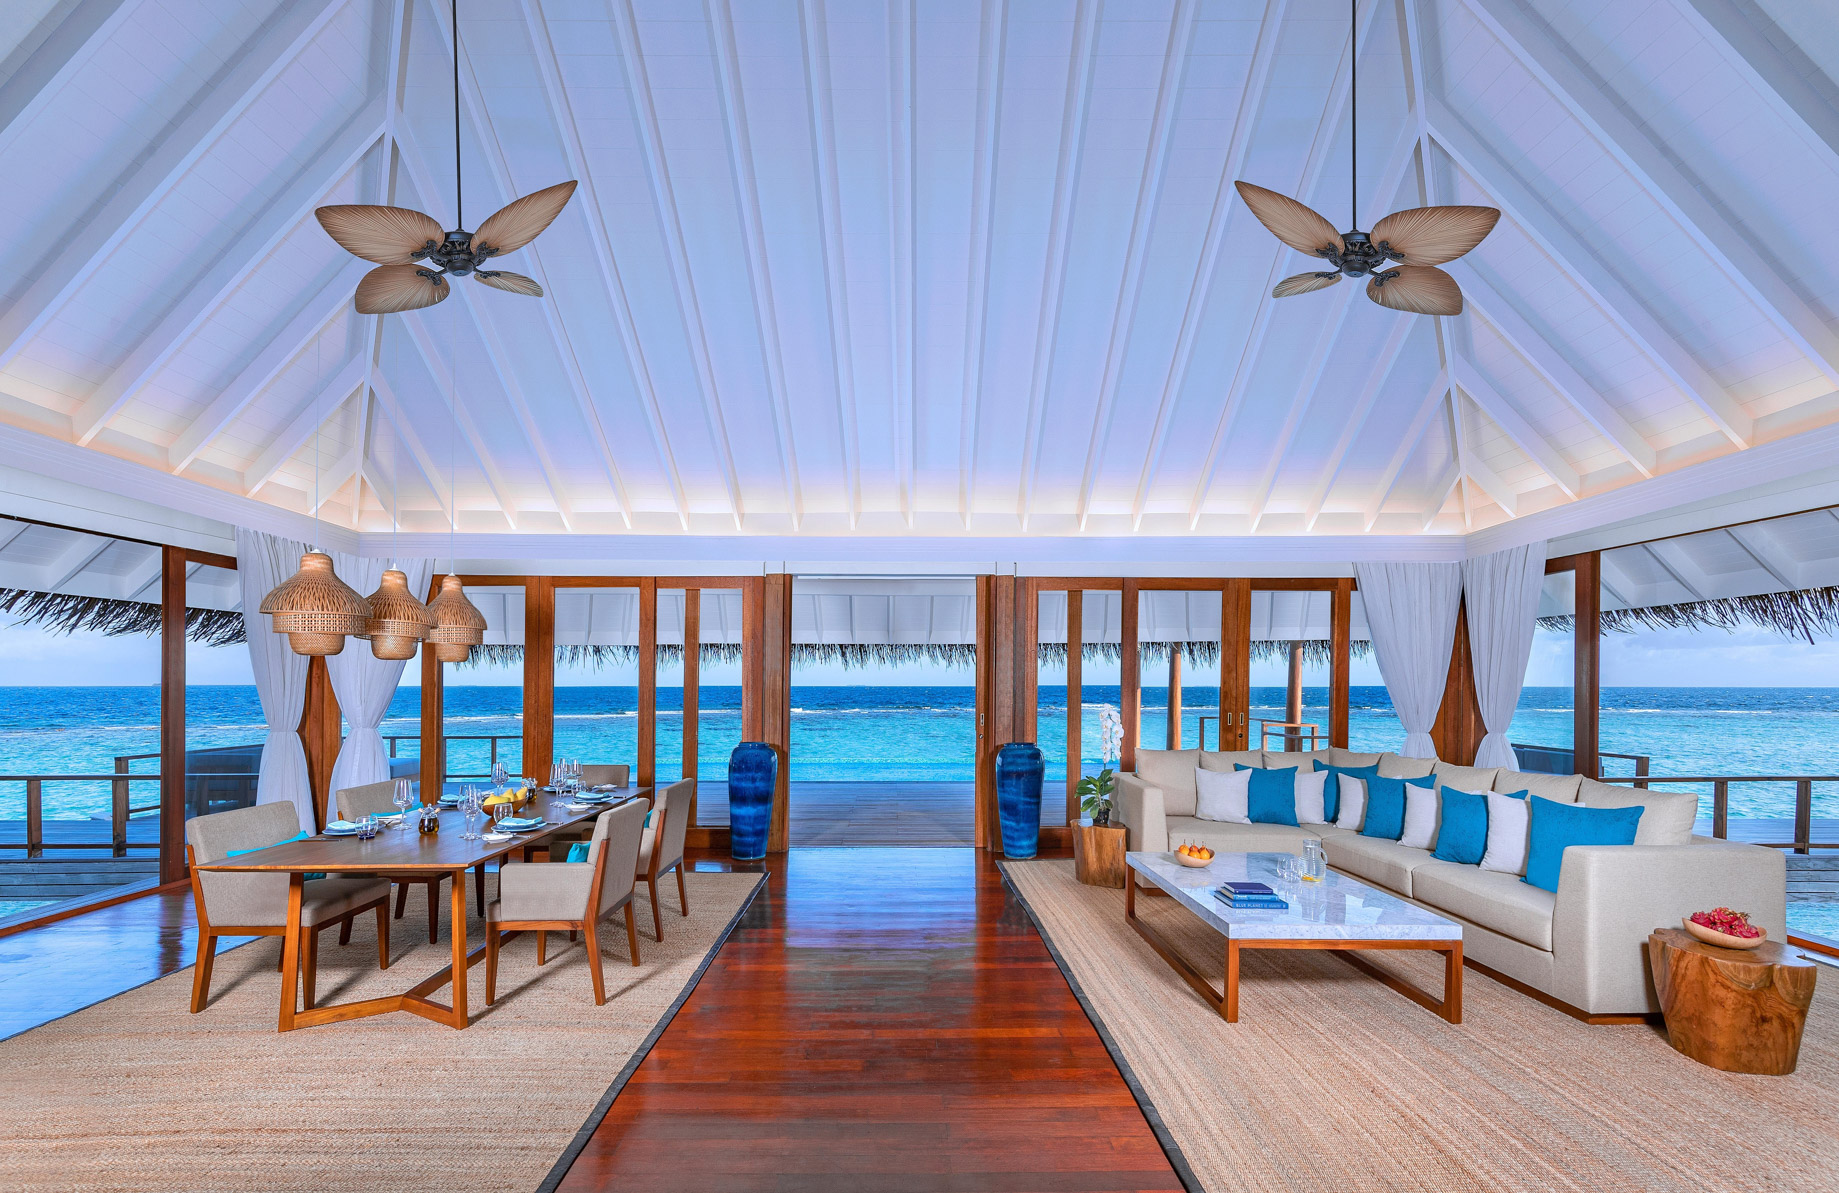 Anantara Kihavah Maldives Villas Resort – Baa Atoll, Maldives – Two Bedroom Sunset Over Water Pool Residence Interior Ocean View